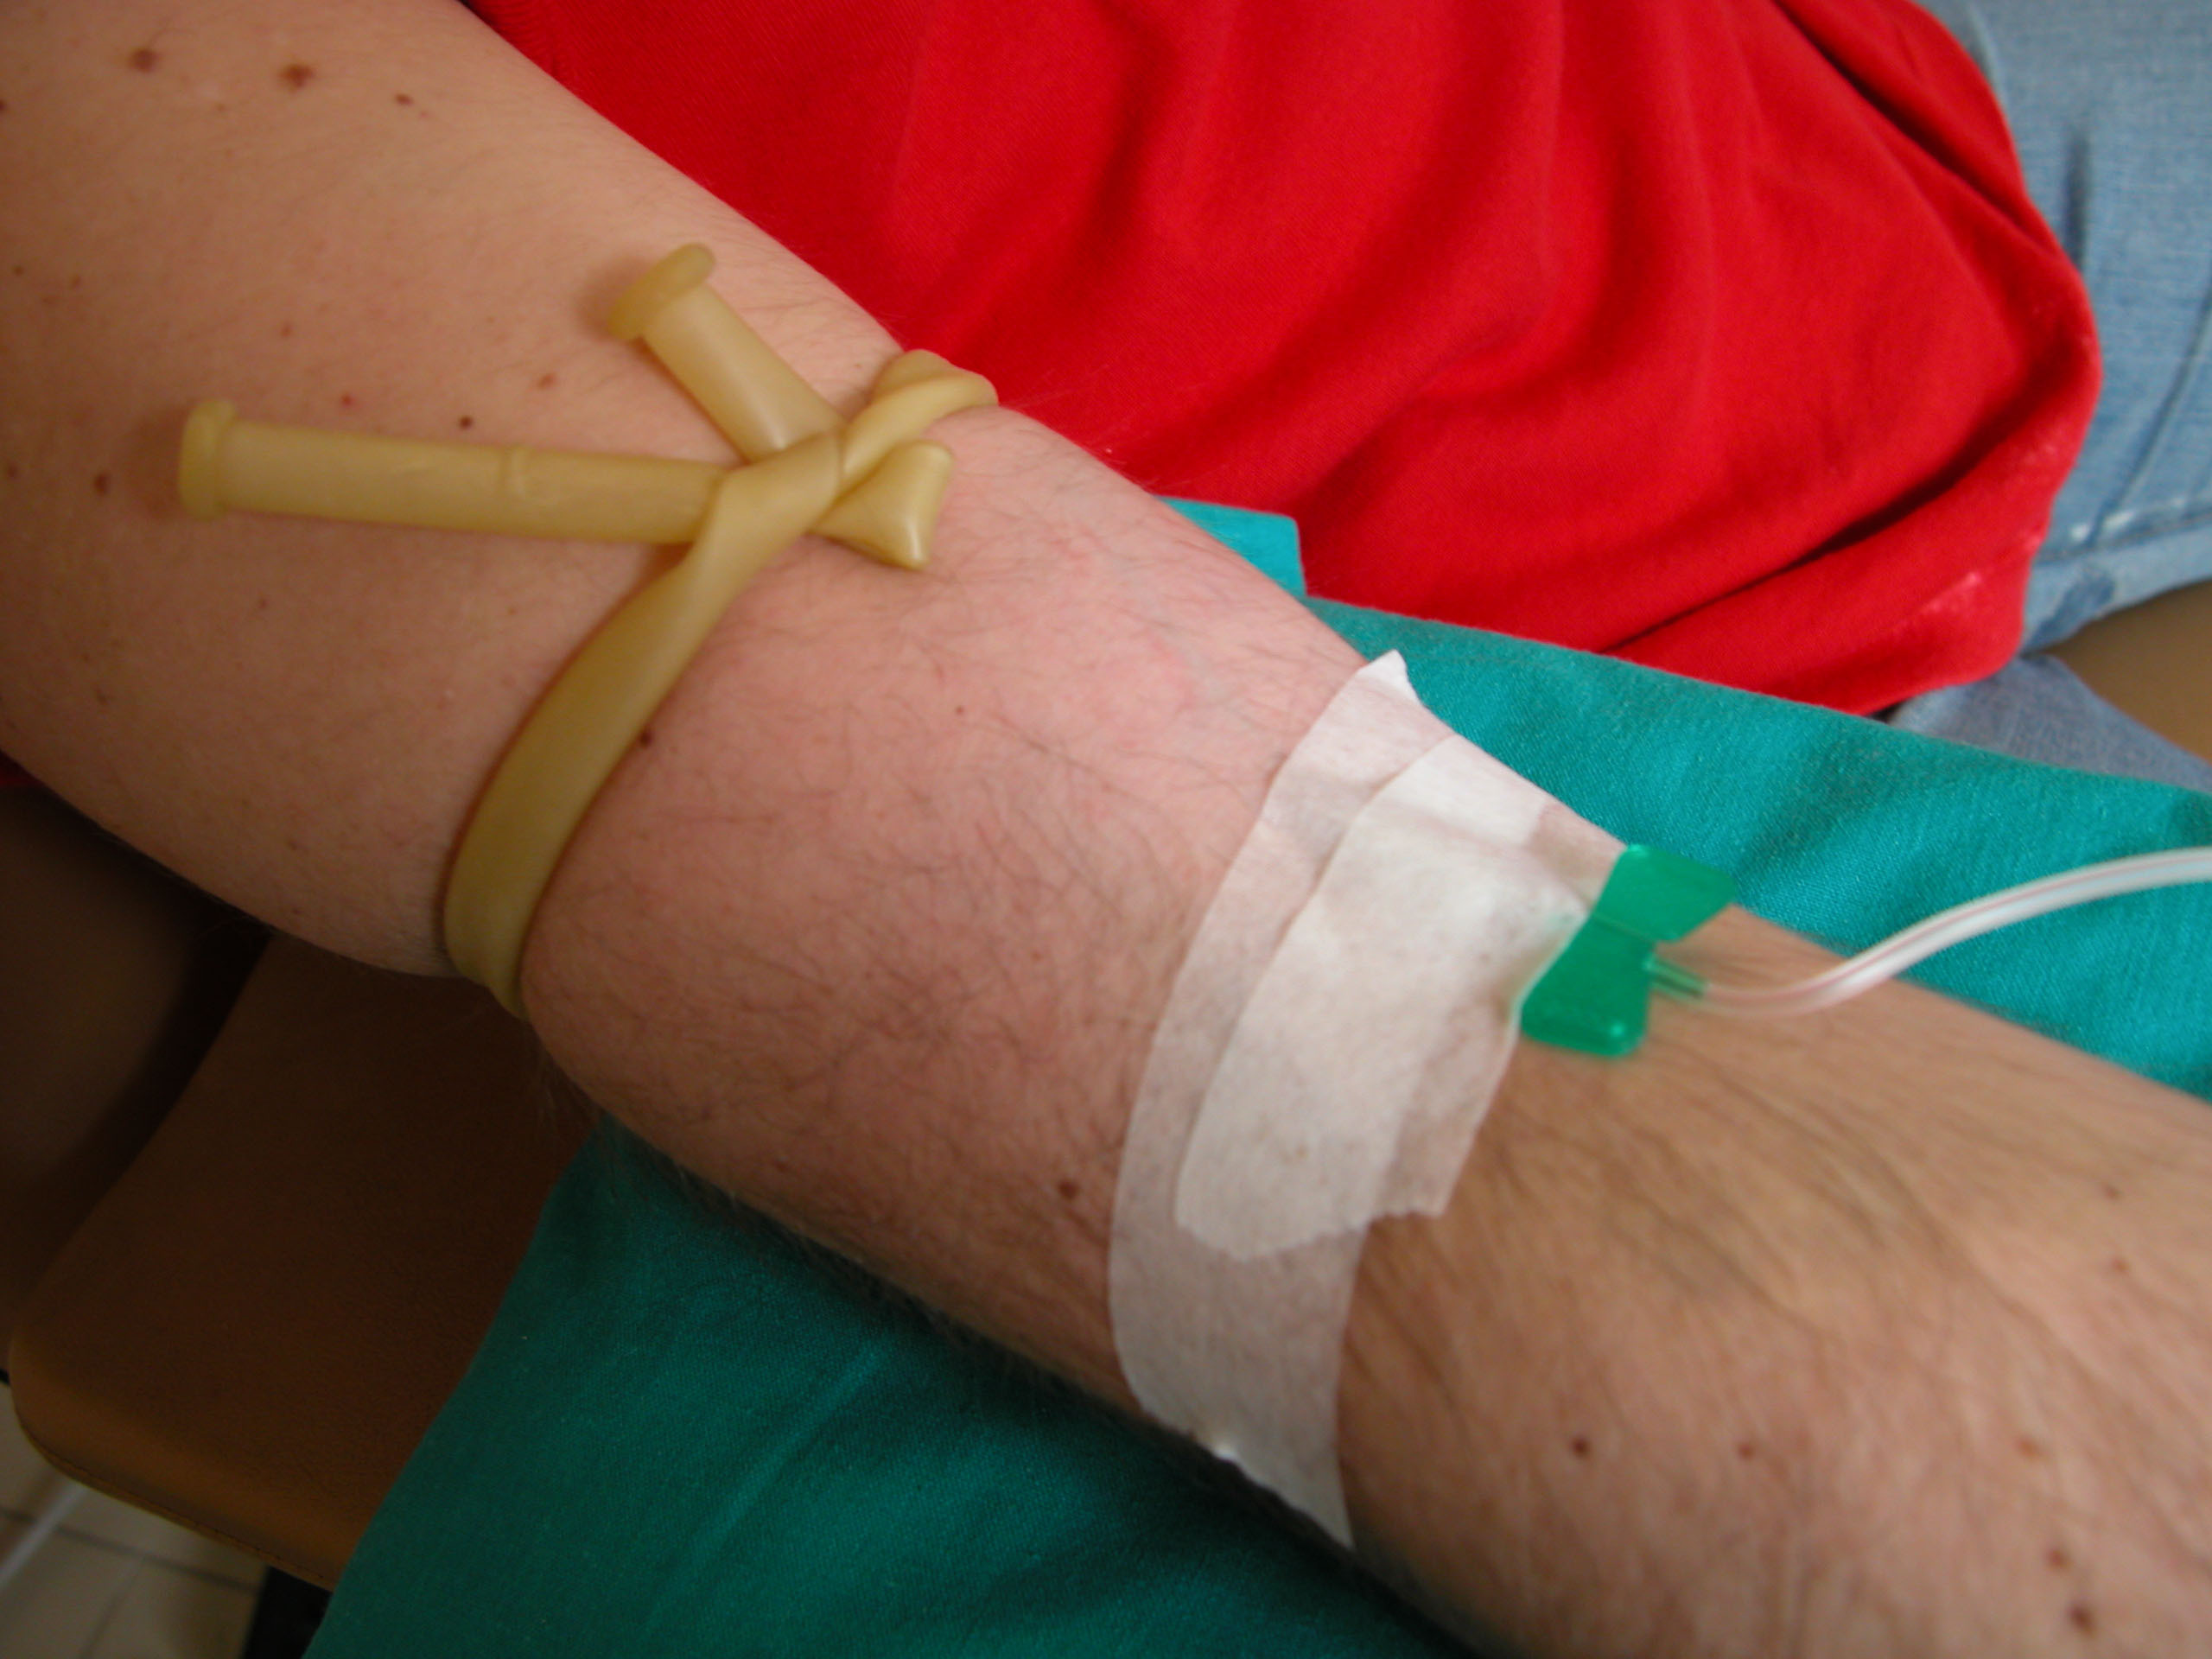 我们在献血,打针输液的时候如果共用一个注射器可能就会出现,梅毒的